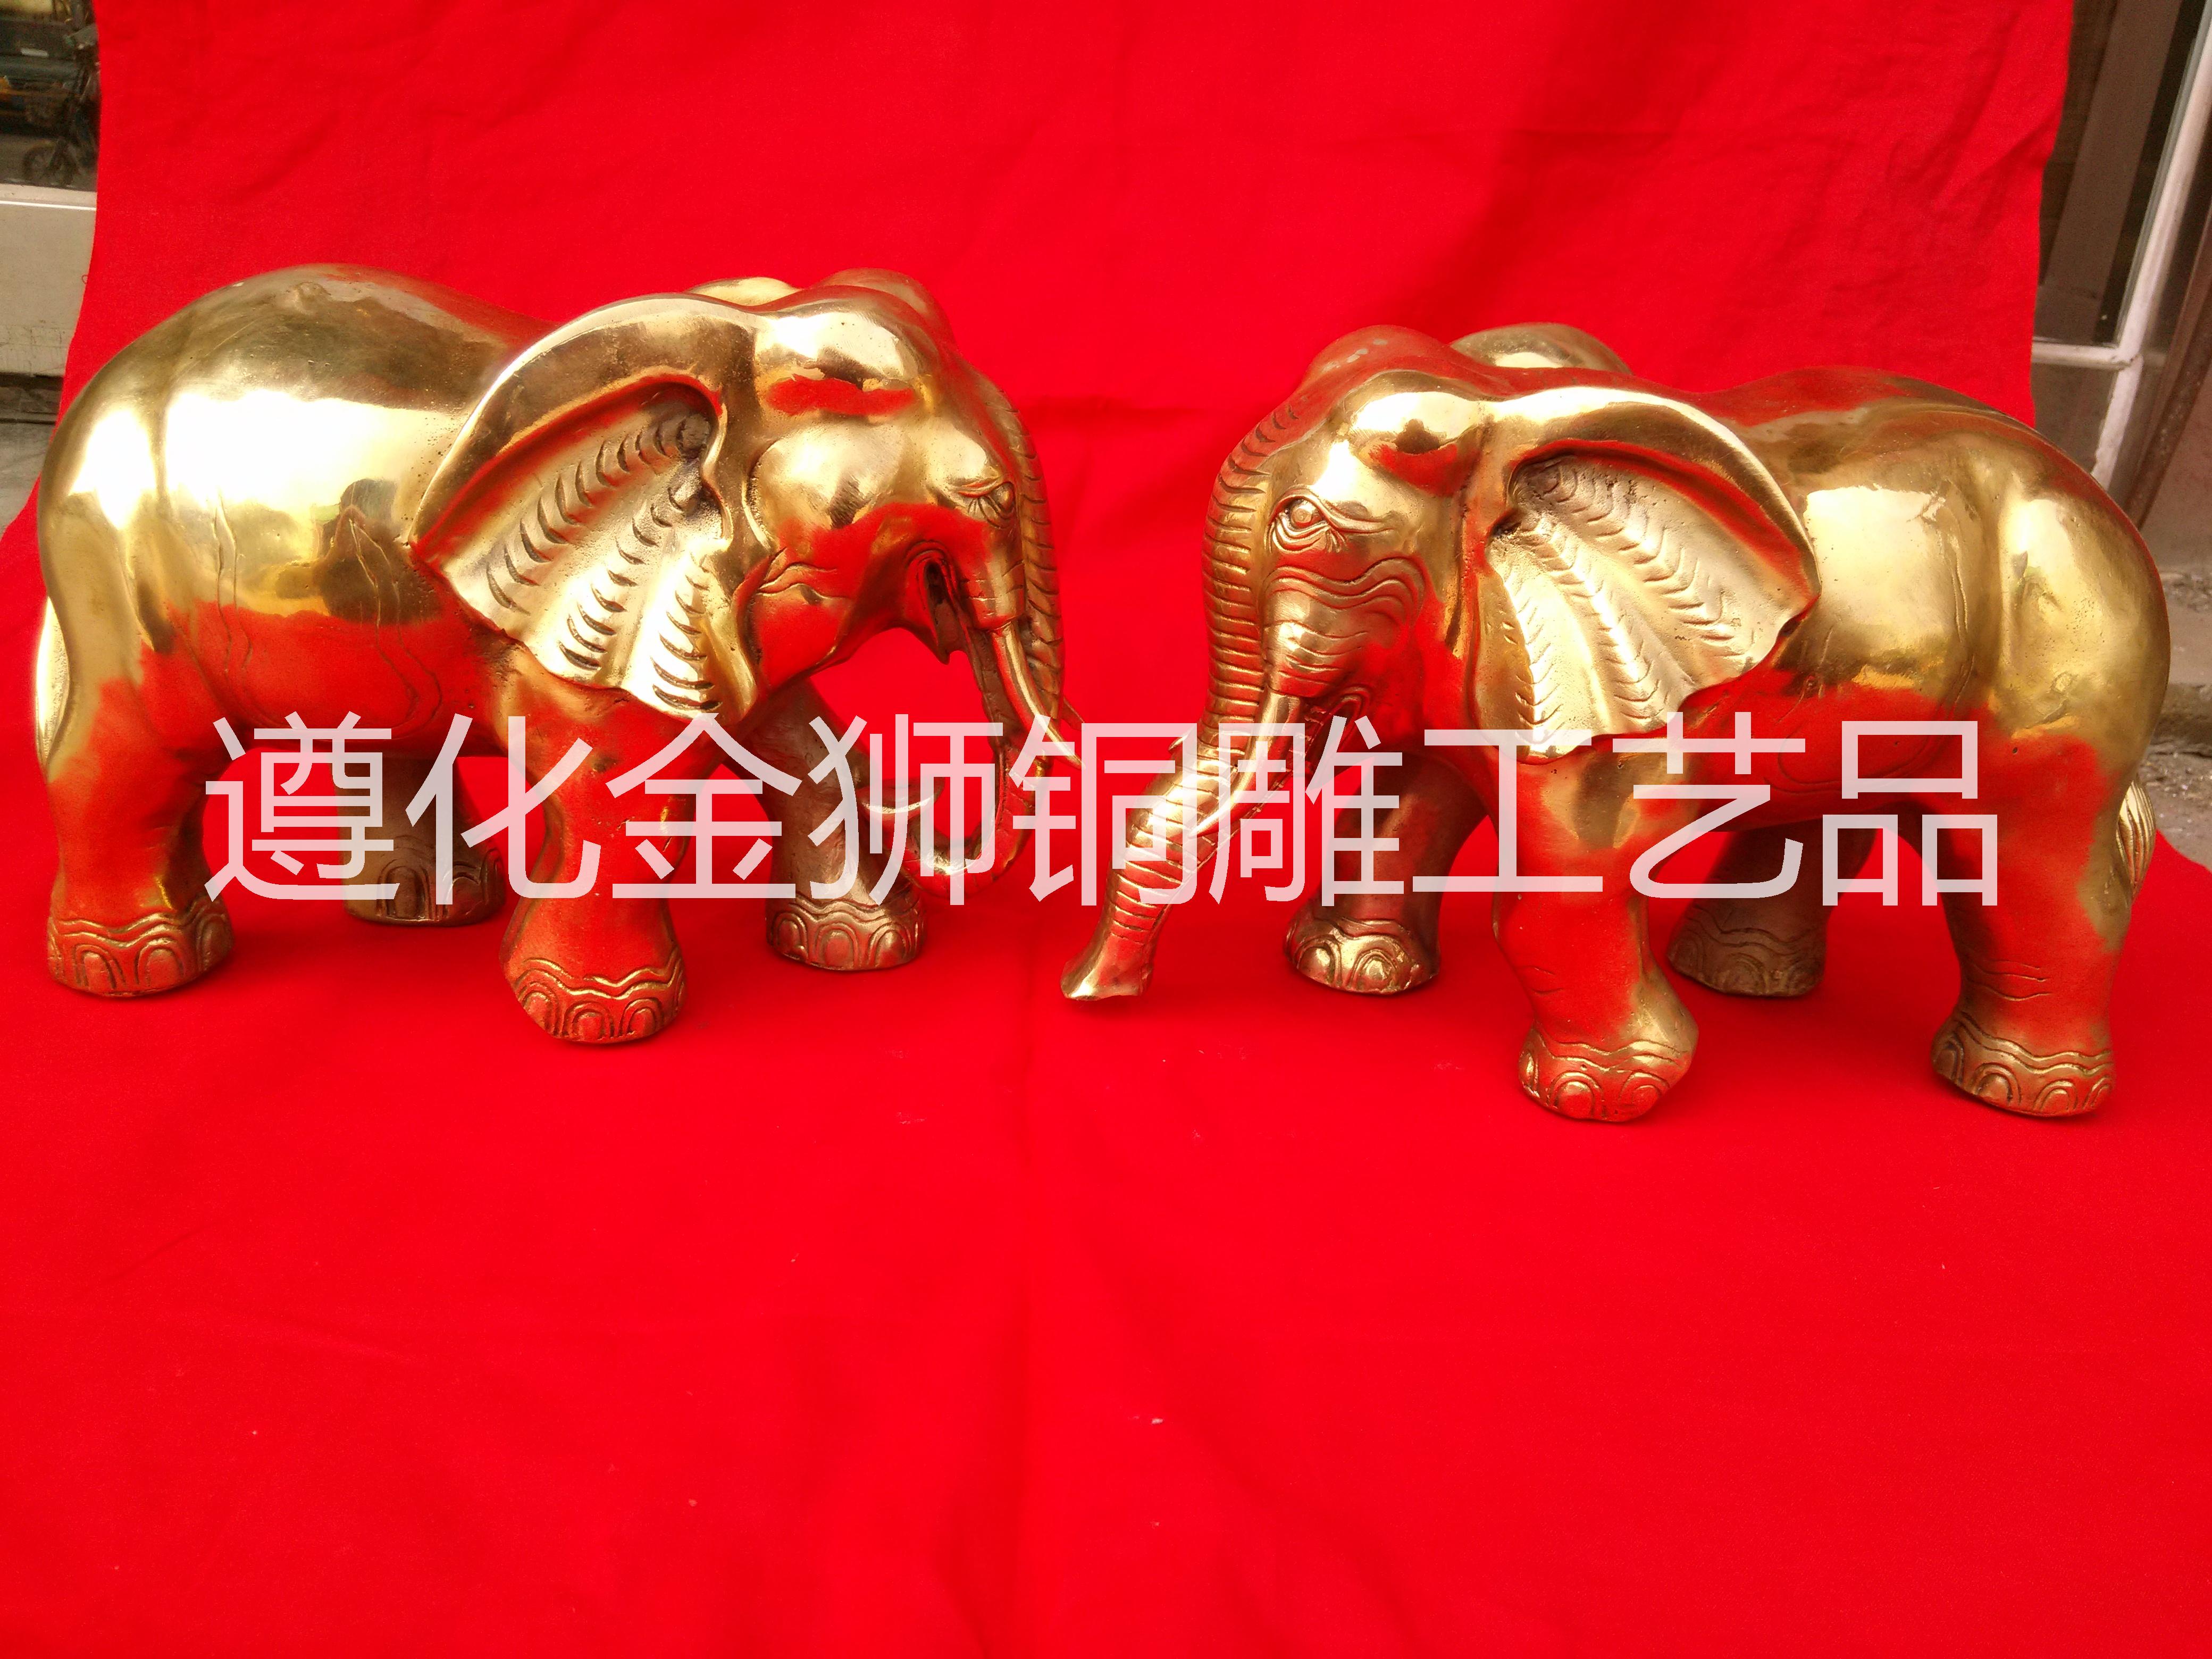 供应纯铜象拉车对象元宝如意象封侯拜相纯铜象摆件一对招财大象吸水象铜财福对象家居装饰工艺品风水摆件